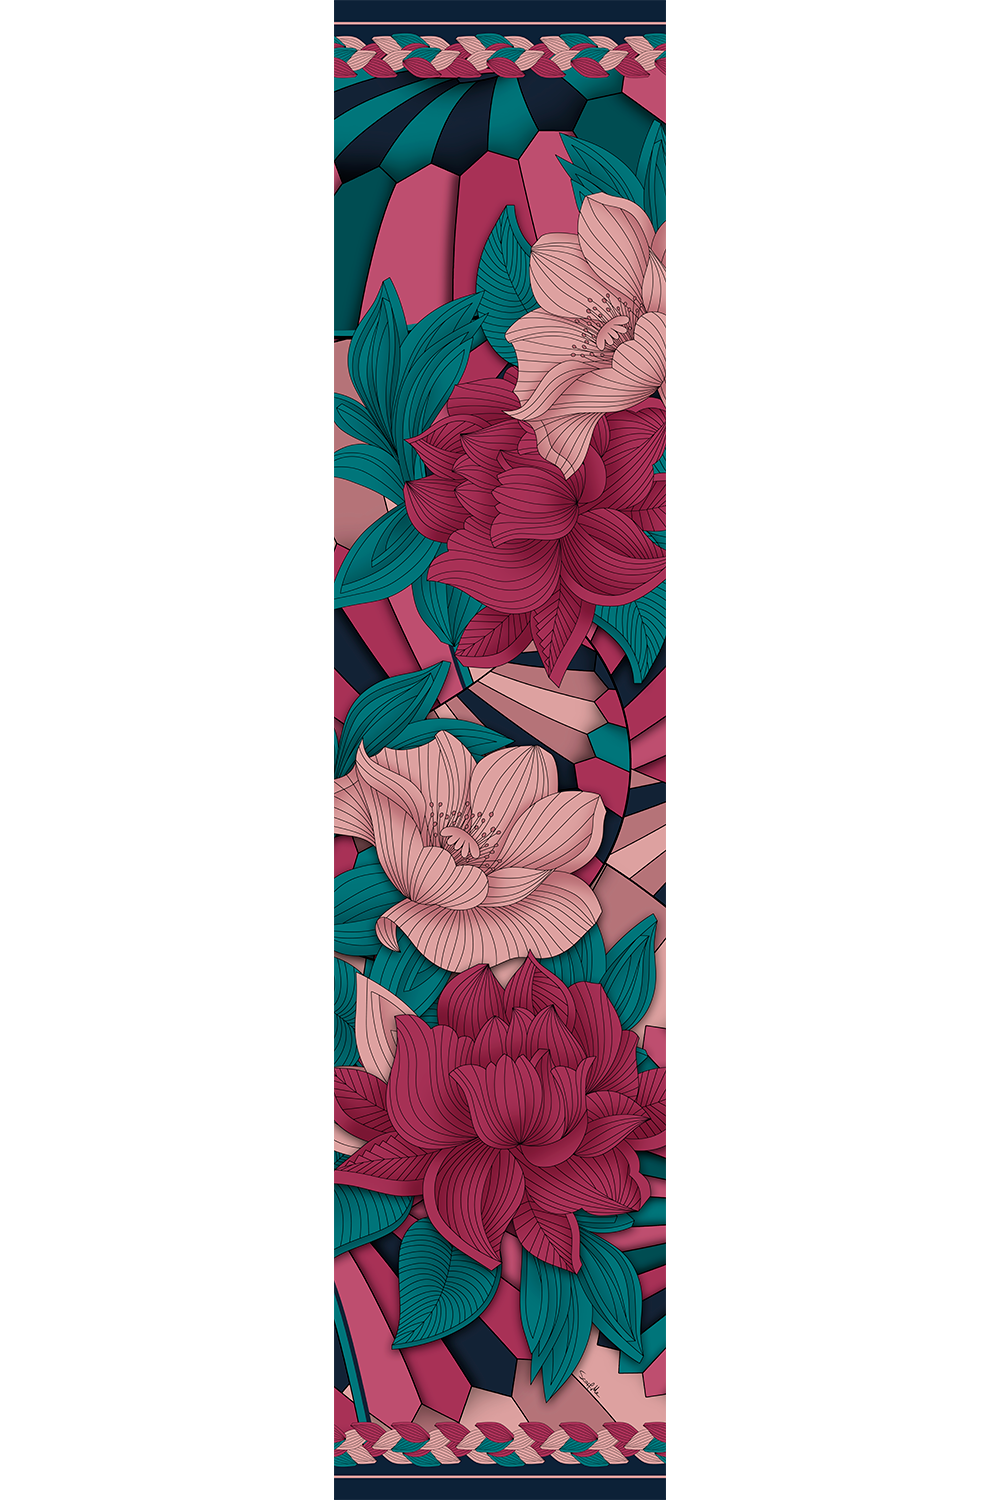 Echarpe Amor & Cuidado floral em mousseline de poliéster | 45x210cm